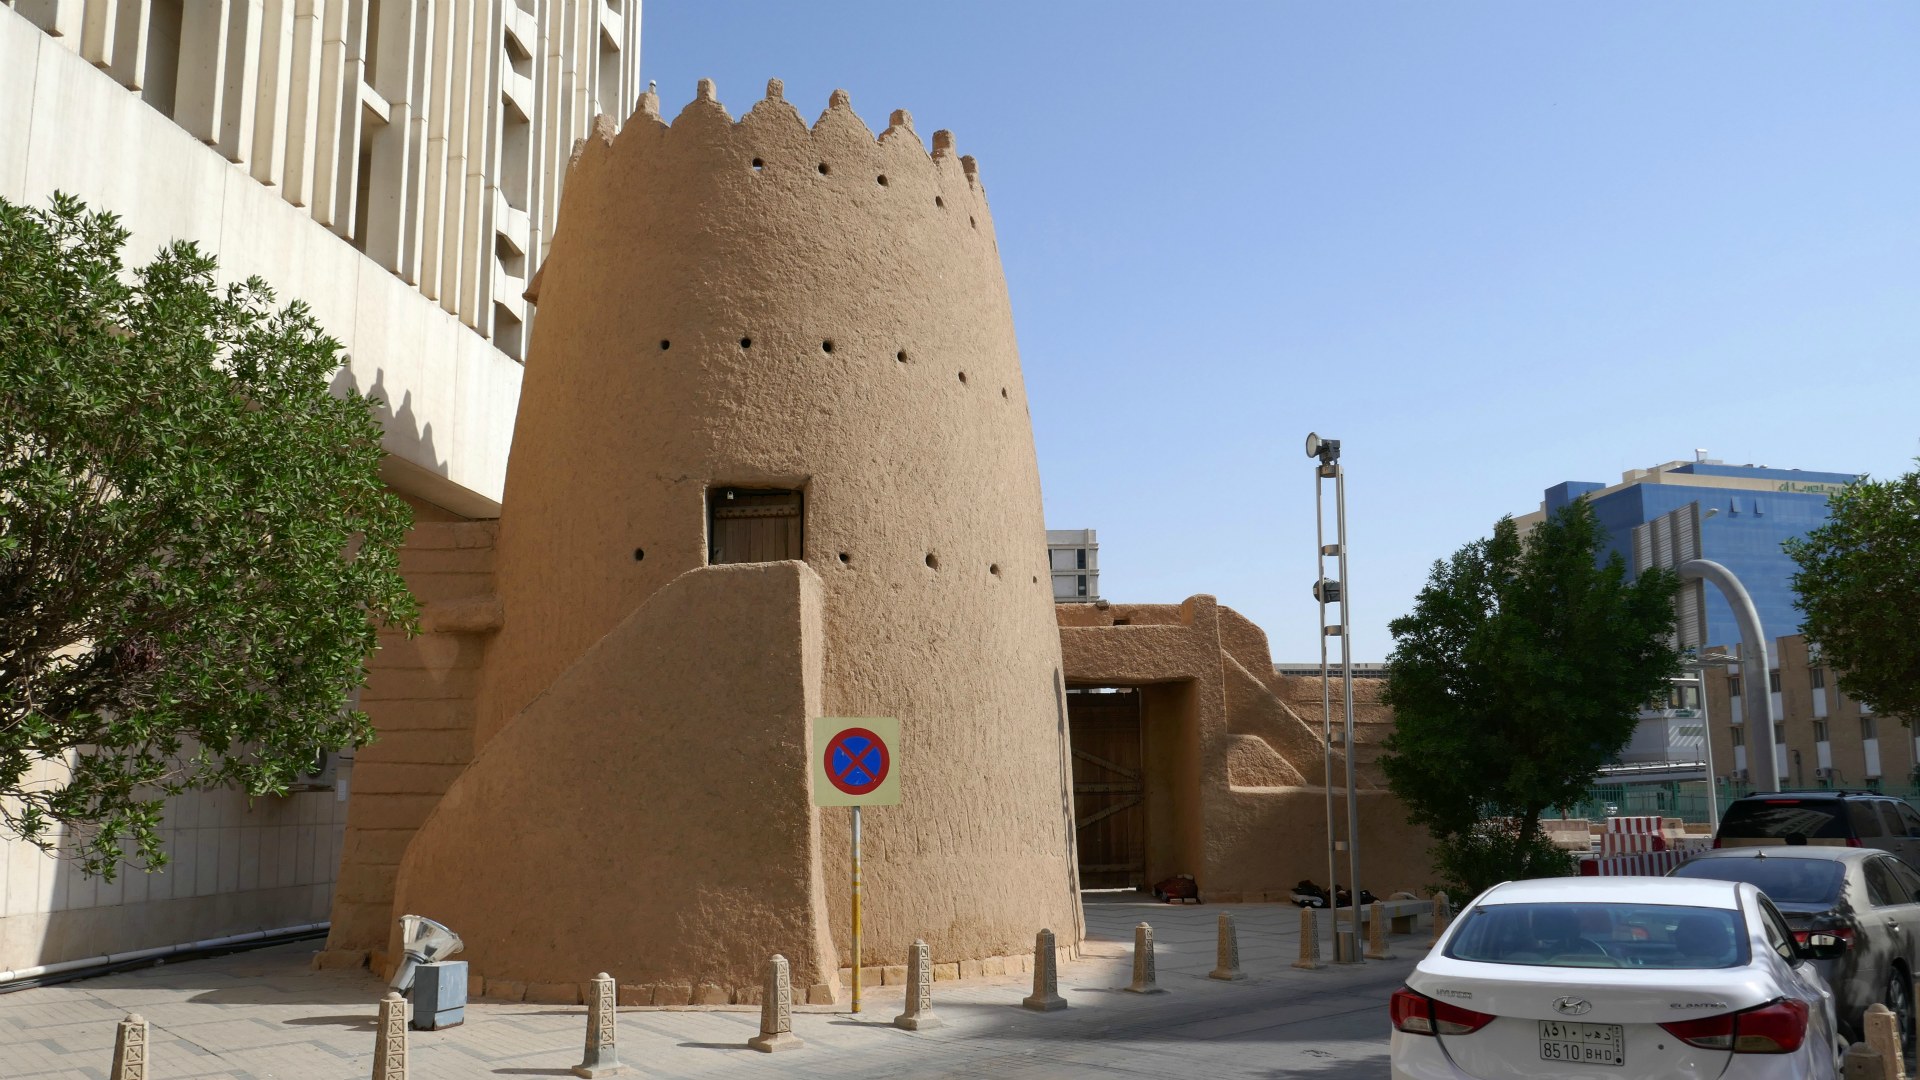 Remains of City Wall, Riyadh